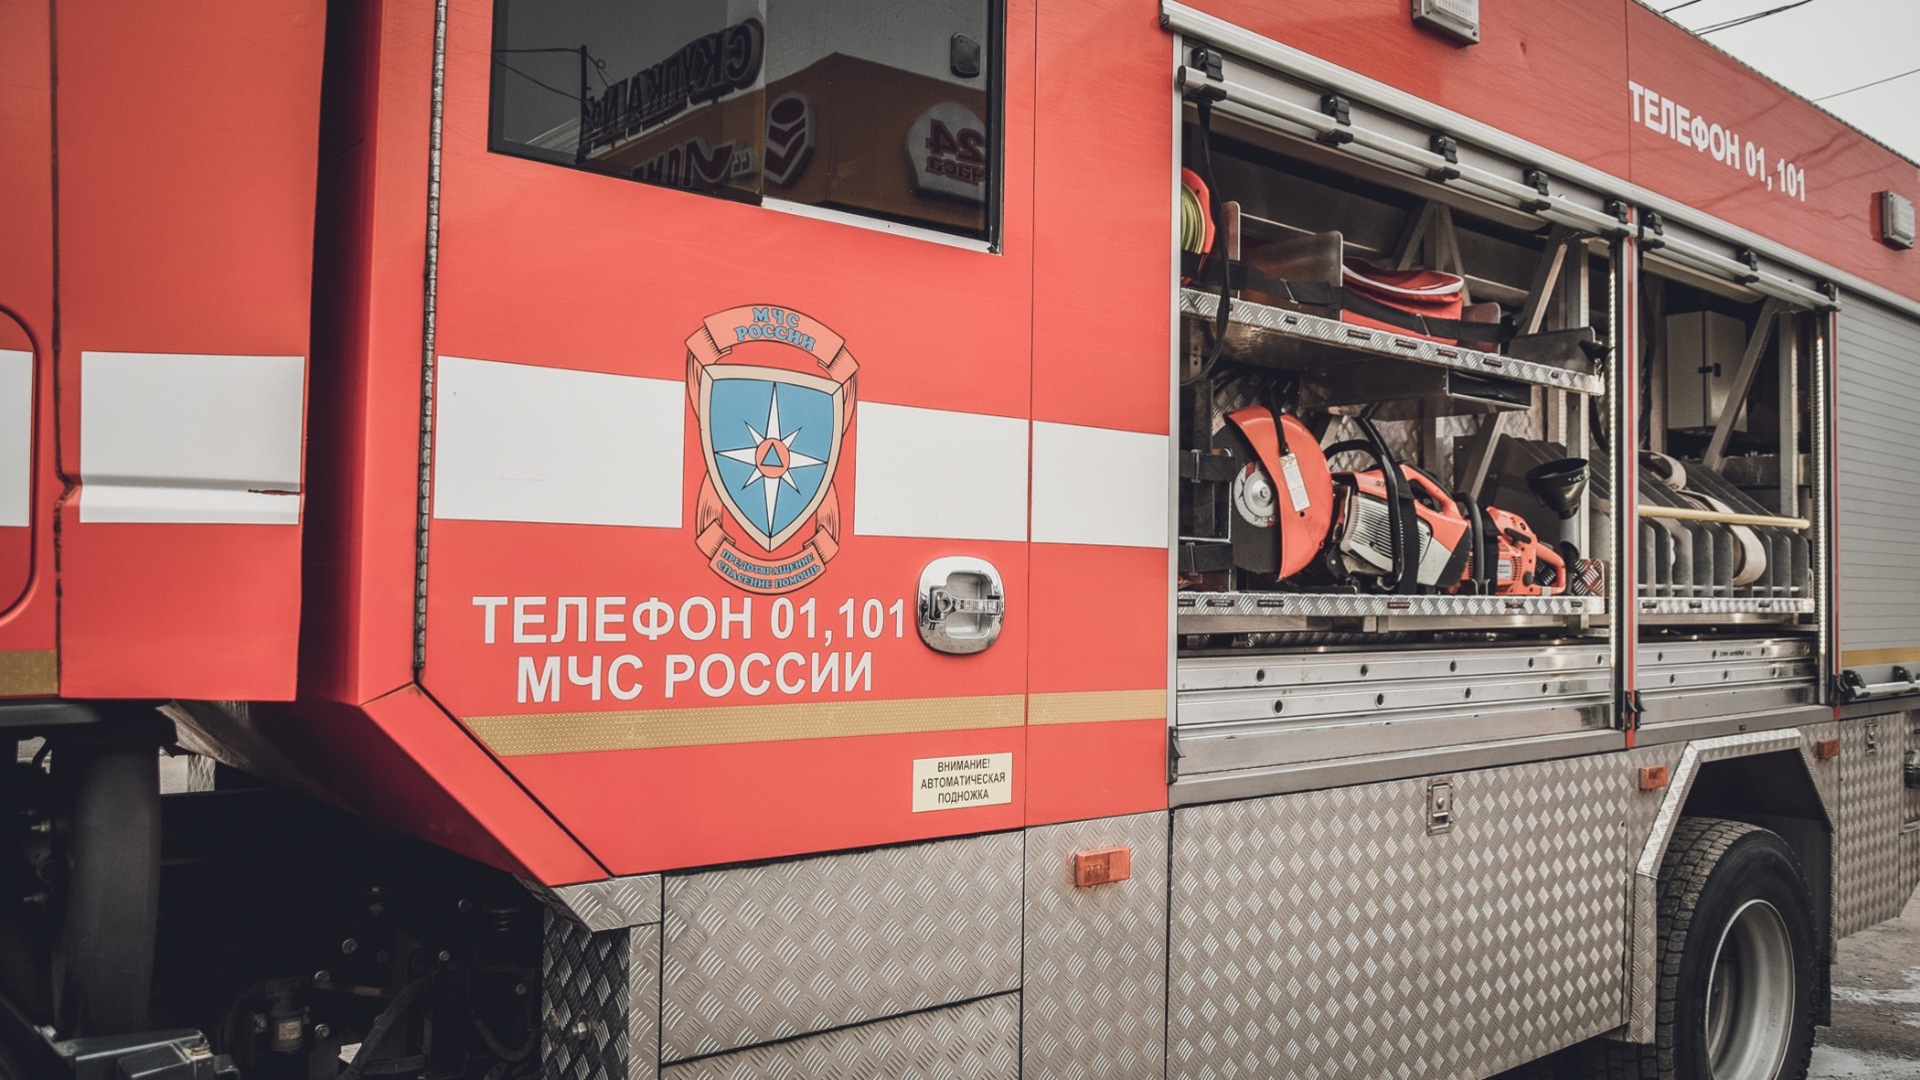 Стеклянный пожар: квартира выгорела из-за банок на балконе в челябинском городе